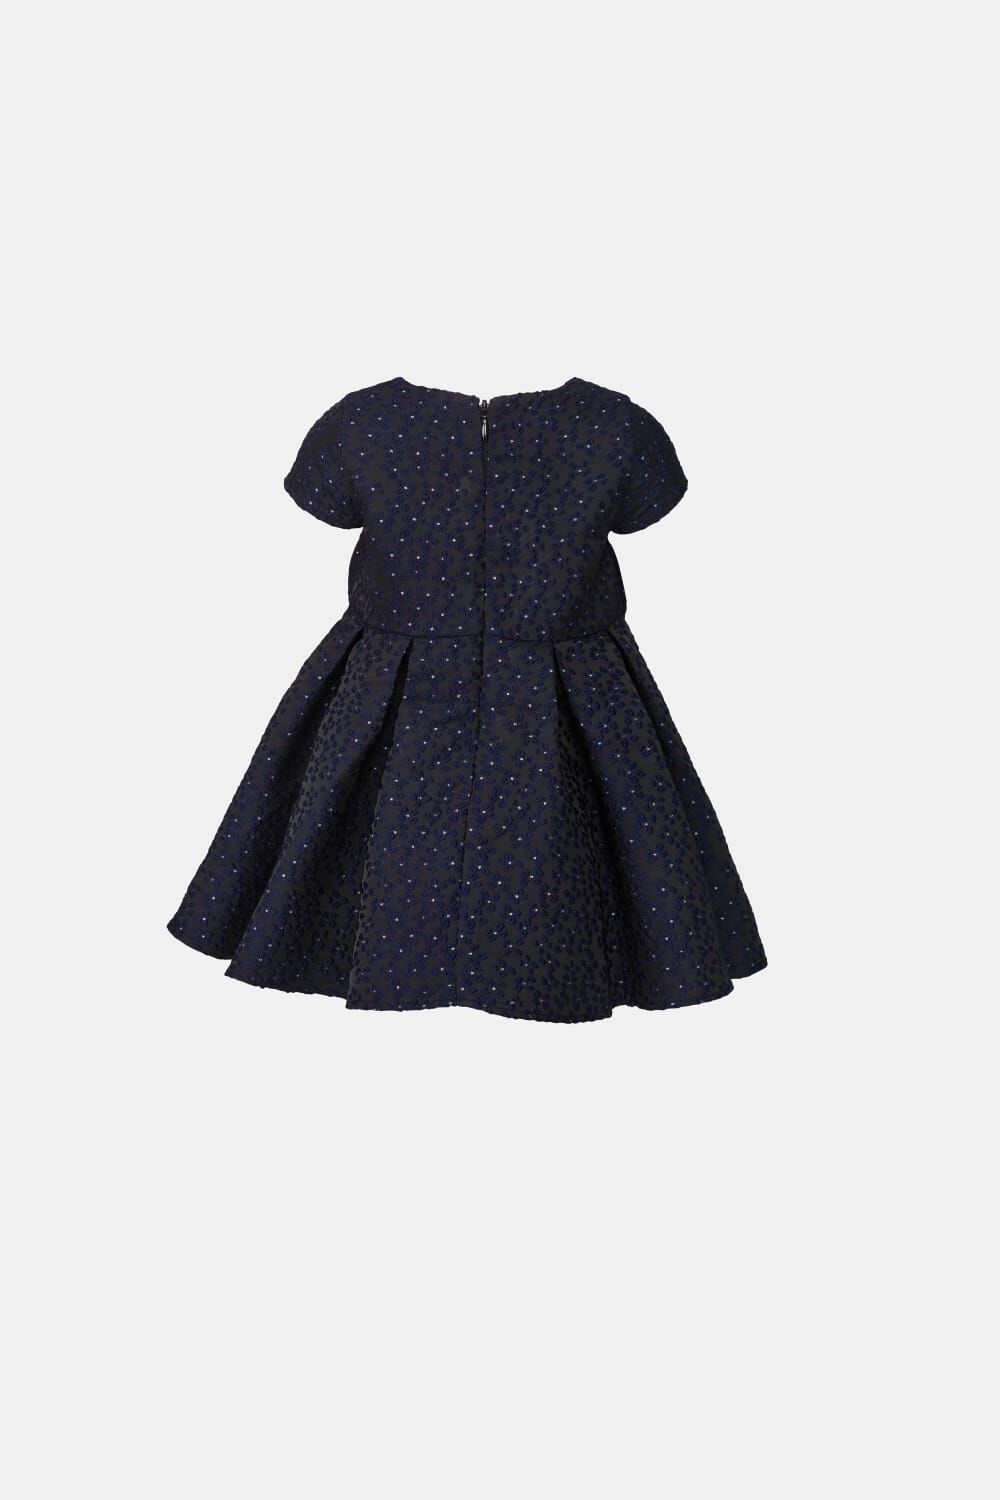 Baby MIRELA MINI BOW DRESS in colour BLACK IRIS